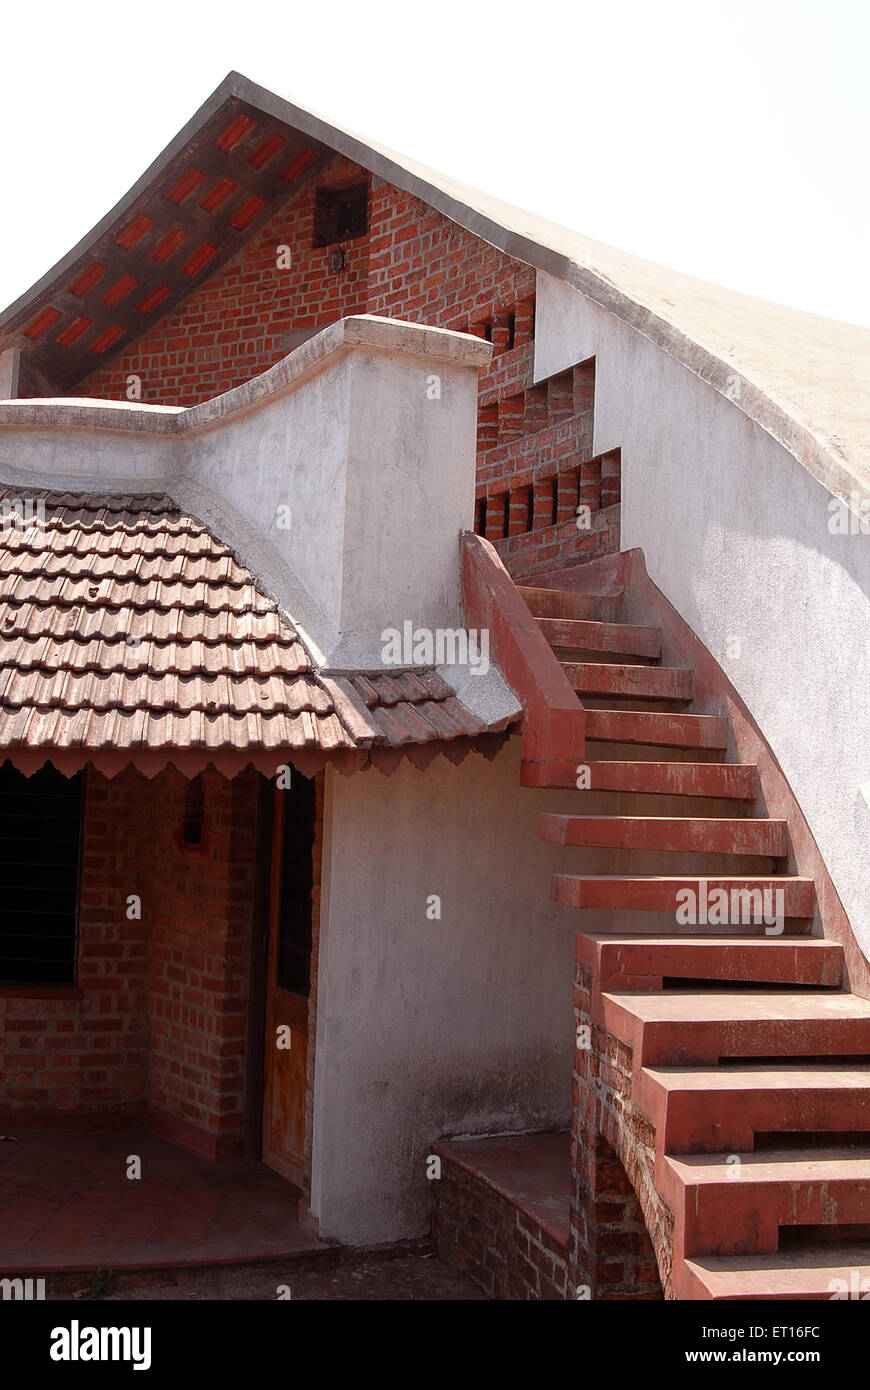 Escaleras de la casa de pared de ladrillo, India Foto de stock